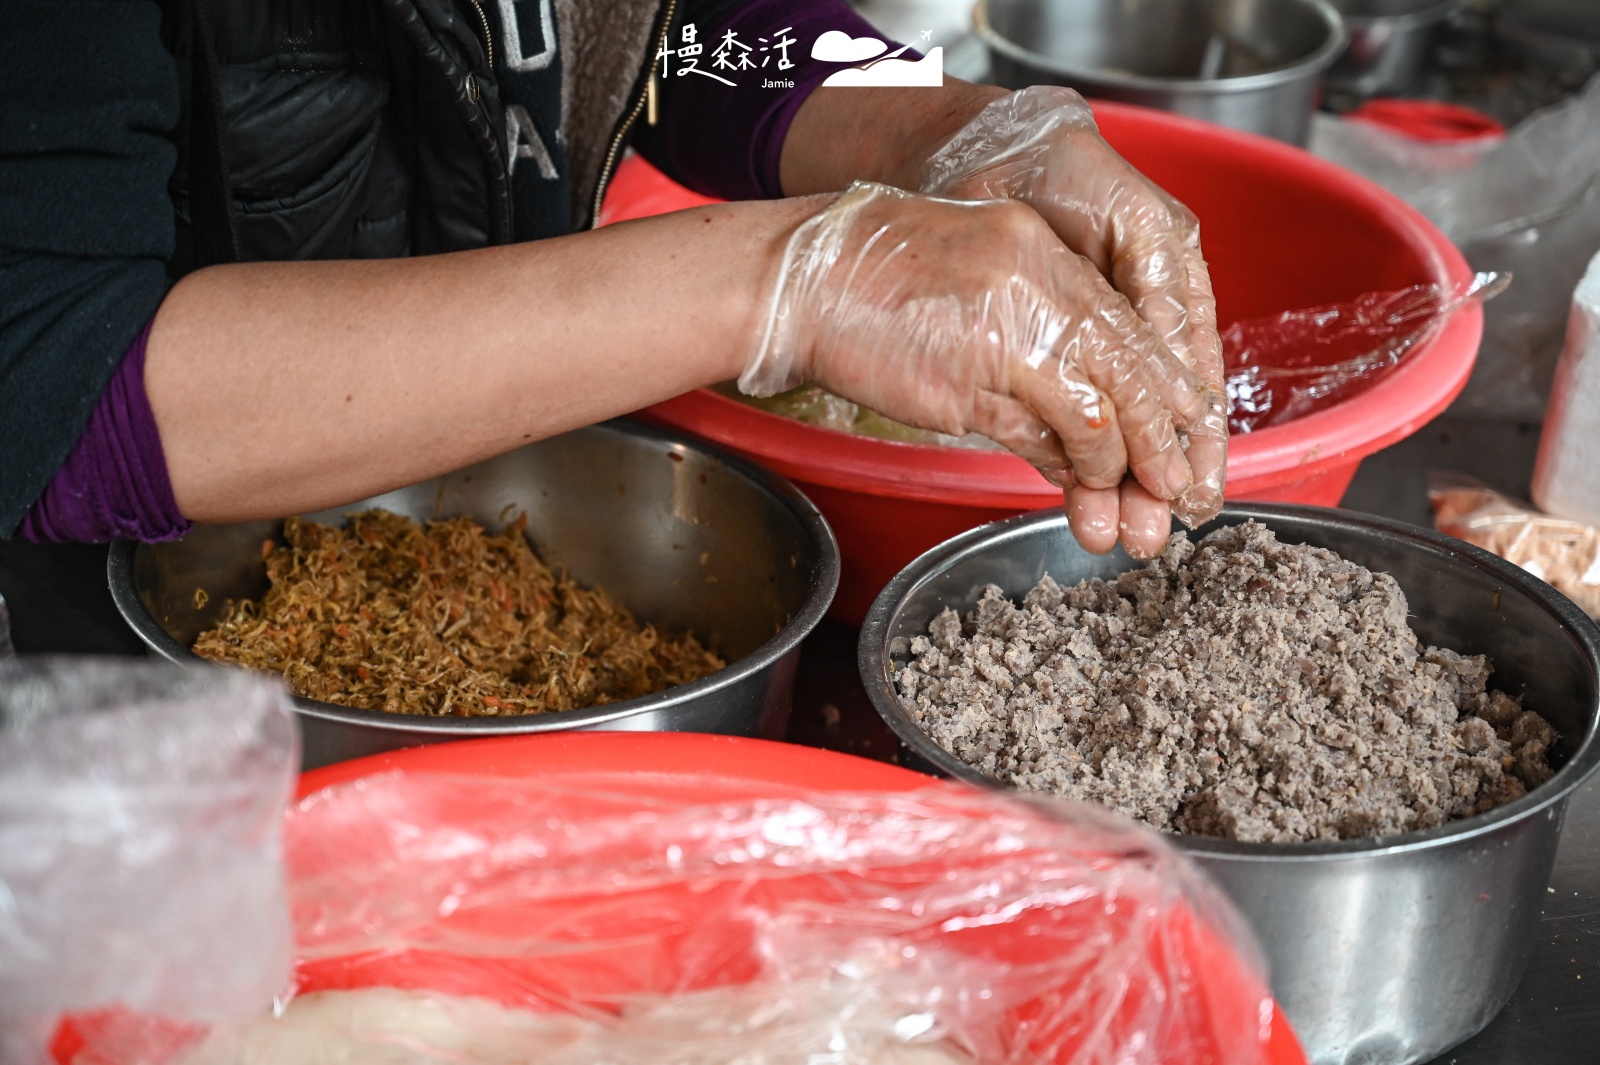 宜蘭南北館市場限定3款傳統好滋味 南館市場鹹花豆粿